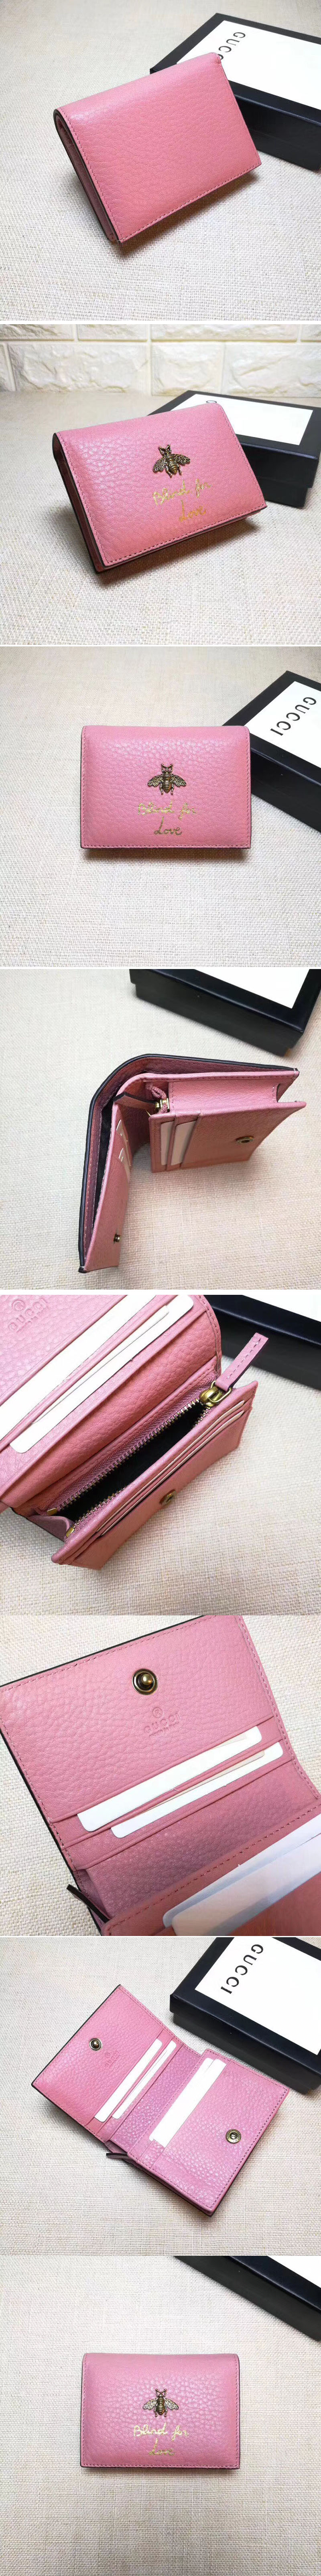 Replica Gucci 460185 Animalier Card Case Pink